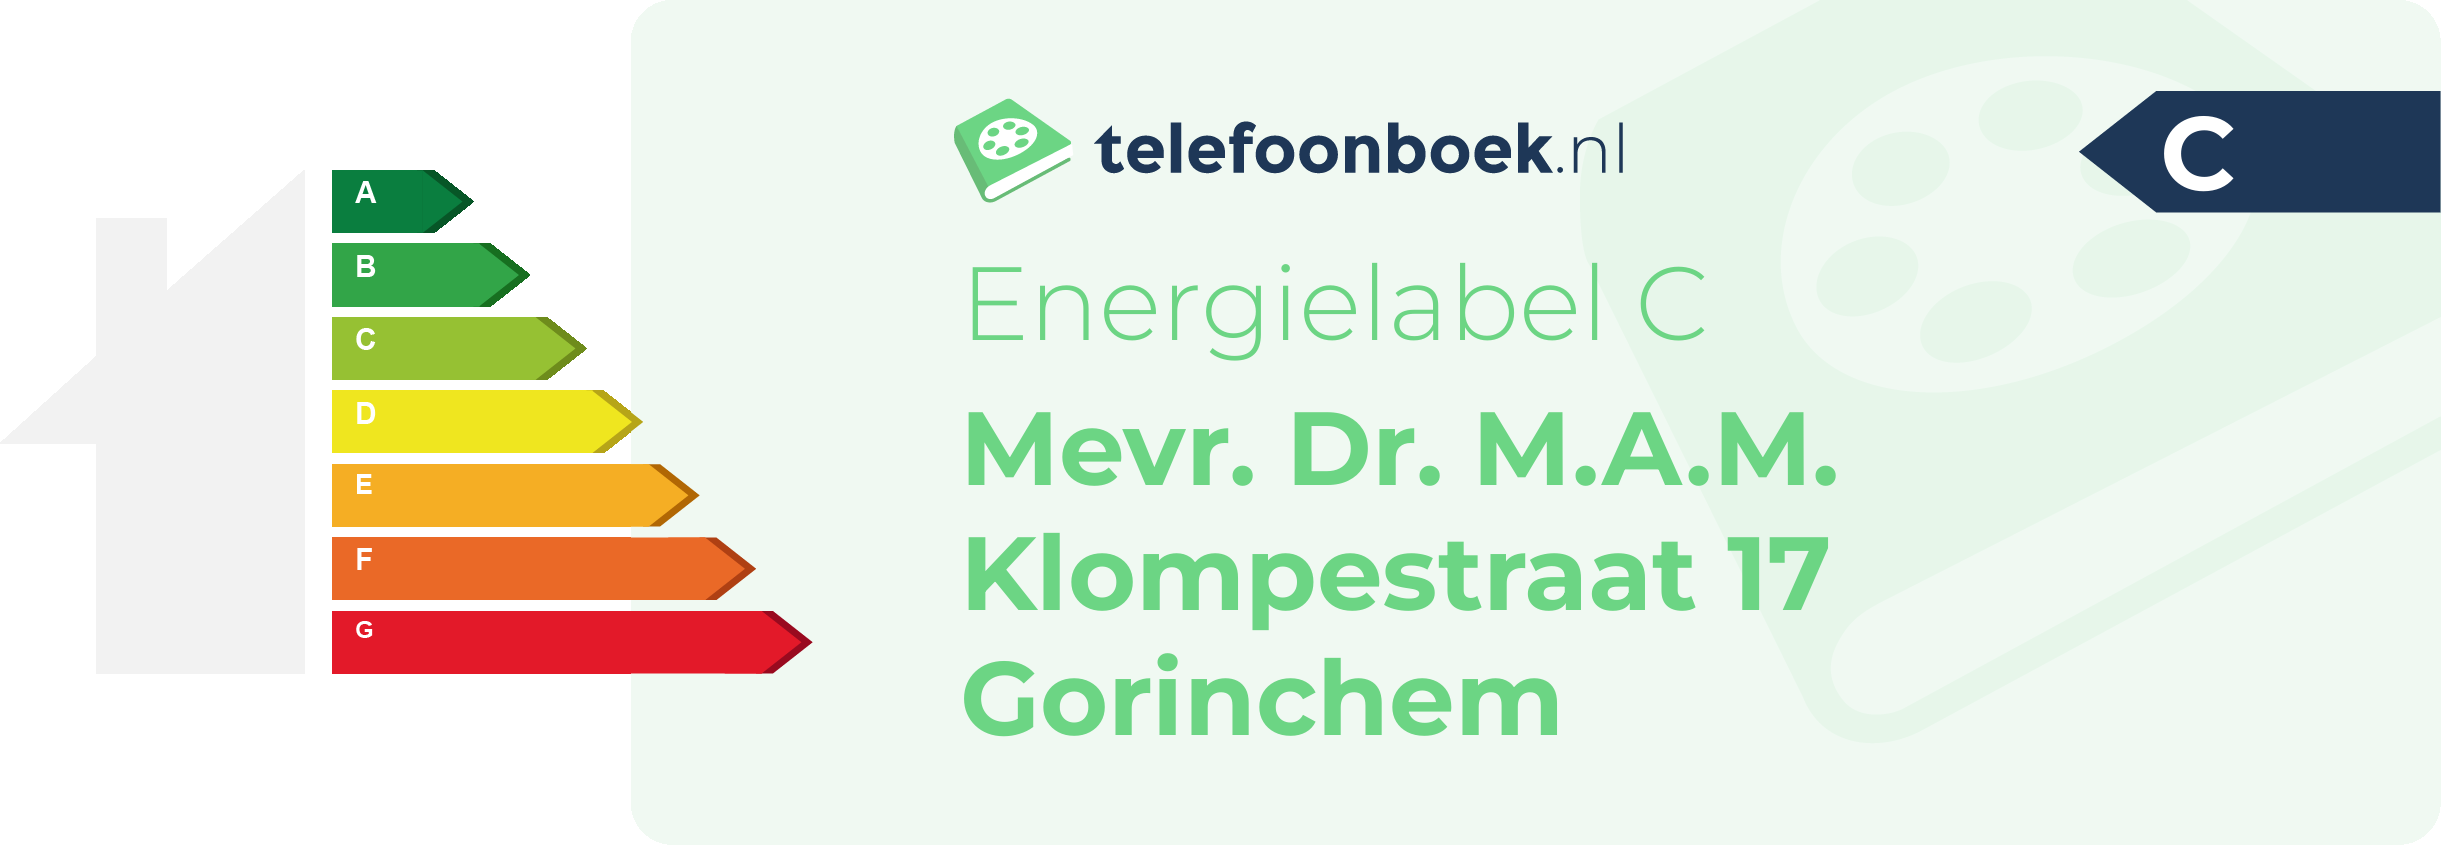 Energielabel Mevr. Dr. M.A.M. Klompestraat 17 Gorinchem